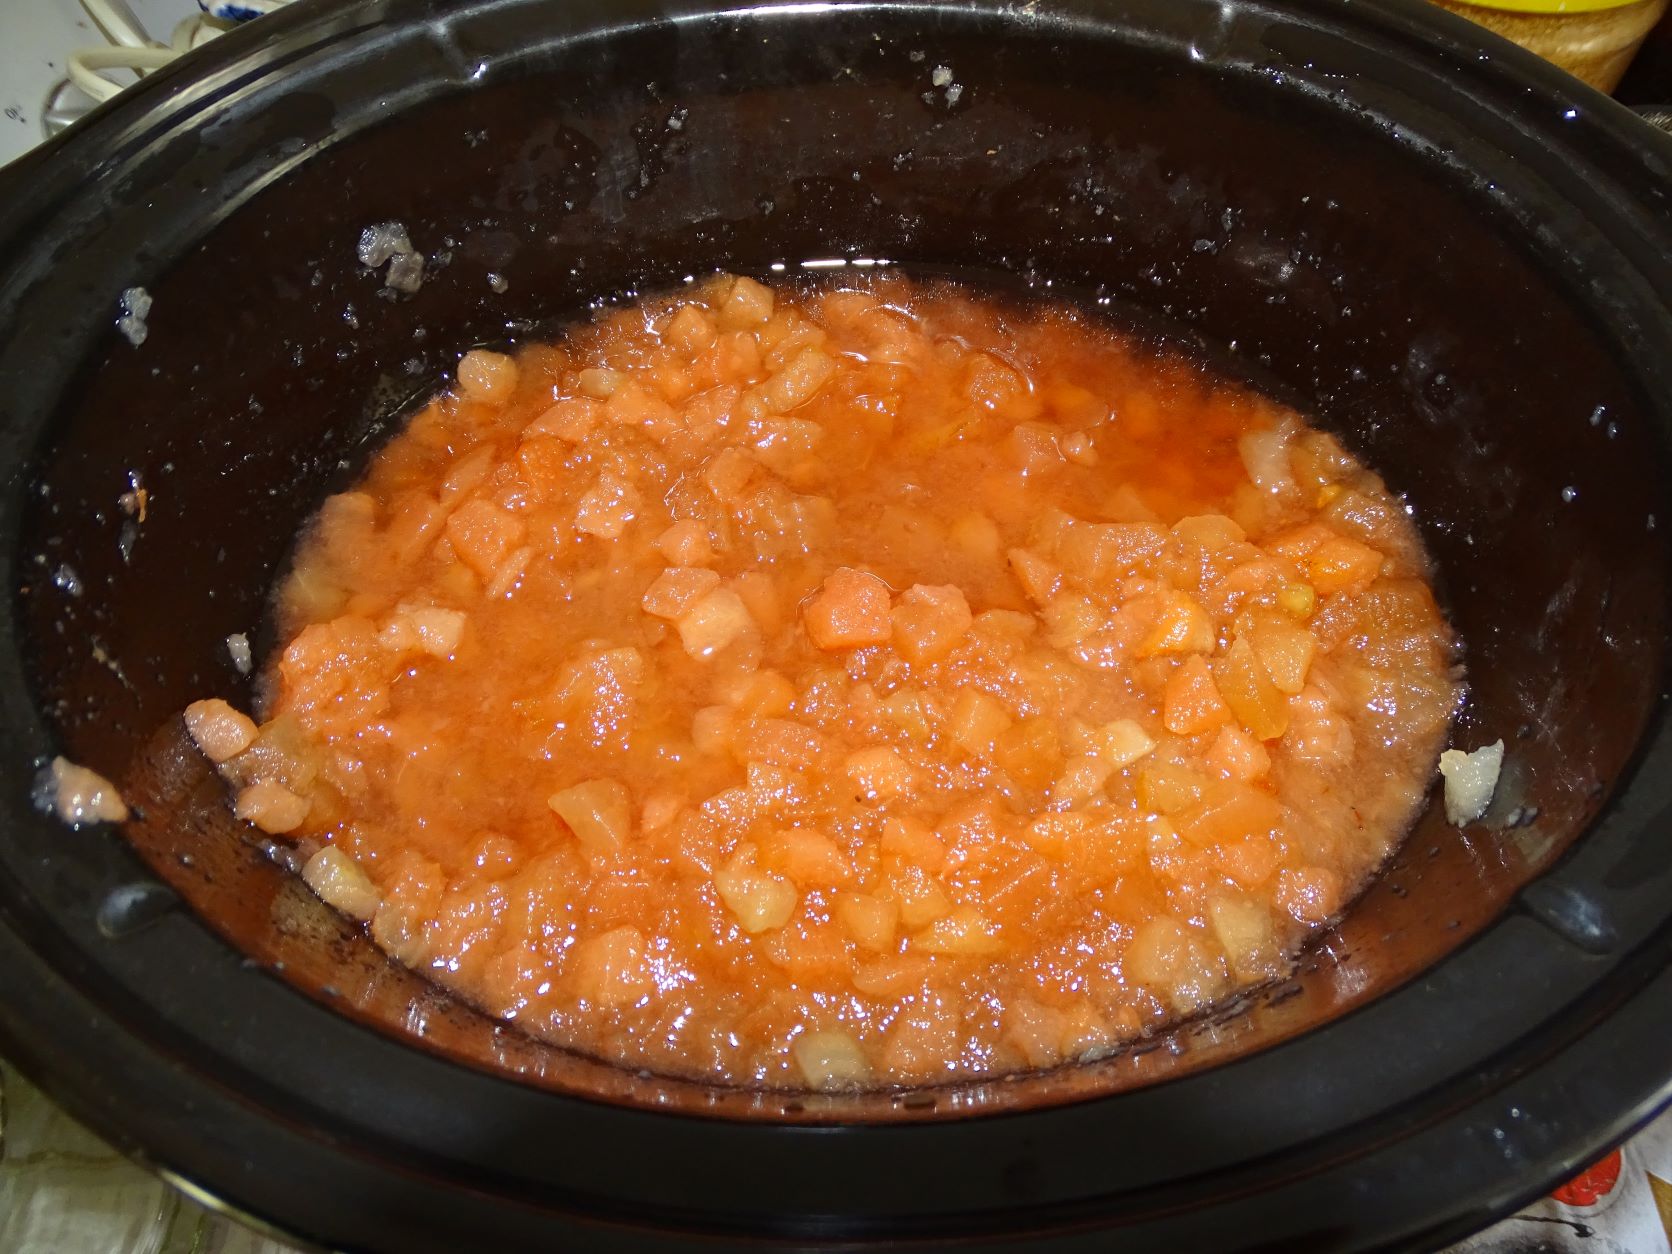 Gem de mere si pere la slow cooker Crock Pot